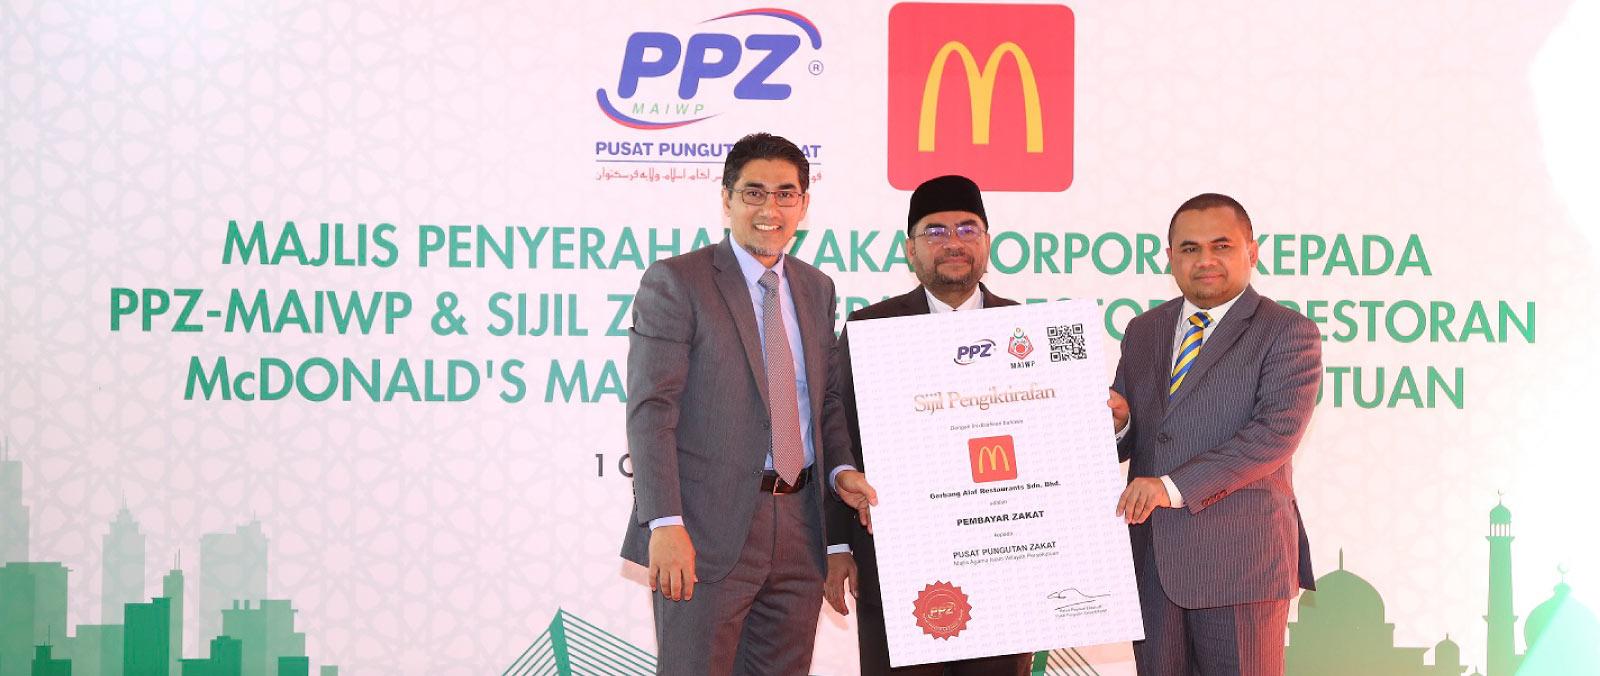 Pusat Pungutan Zakat Majlis Agama Islam Wilayah Persekutuan (PPZ-MAIWP) serah Sijil Pembayar Zakat Korporat pertama kepada McDonald's Malaysia's image'